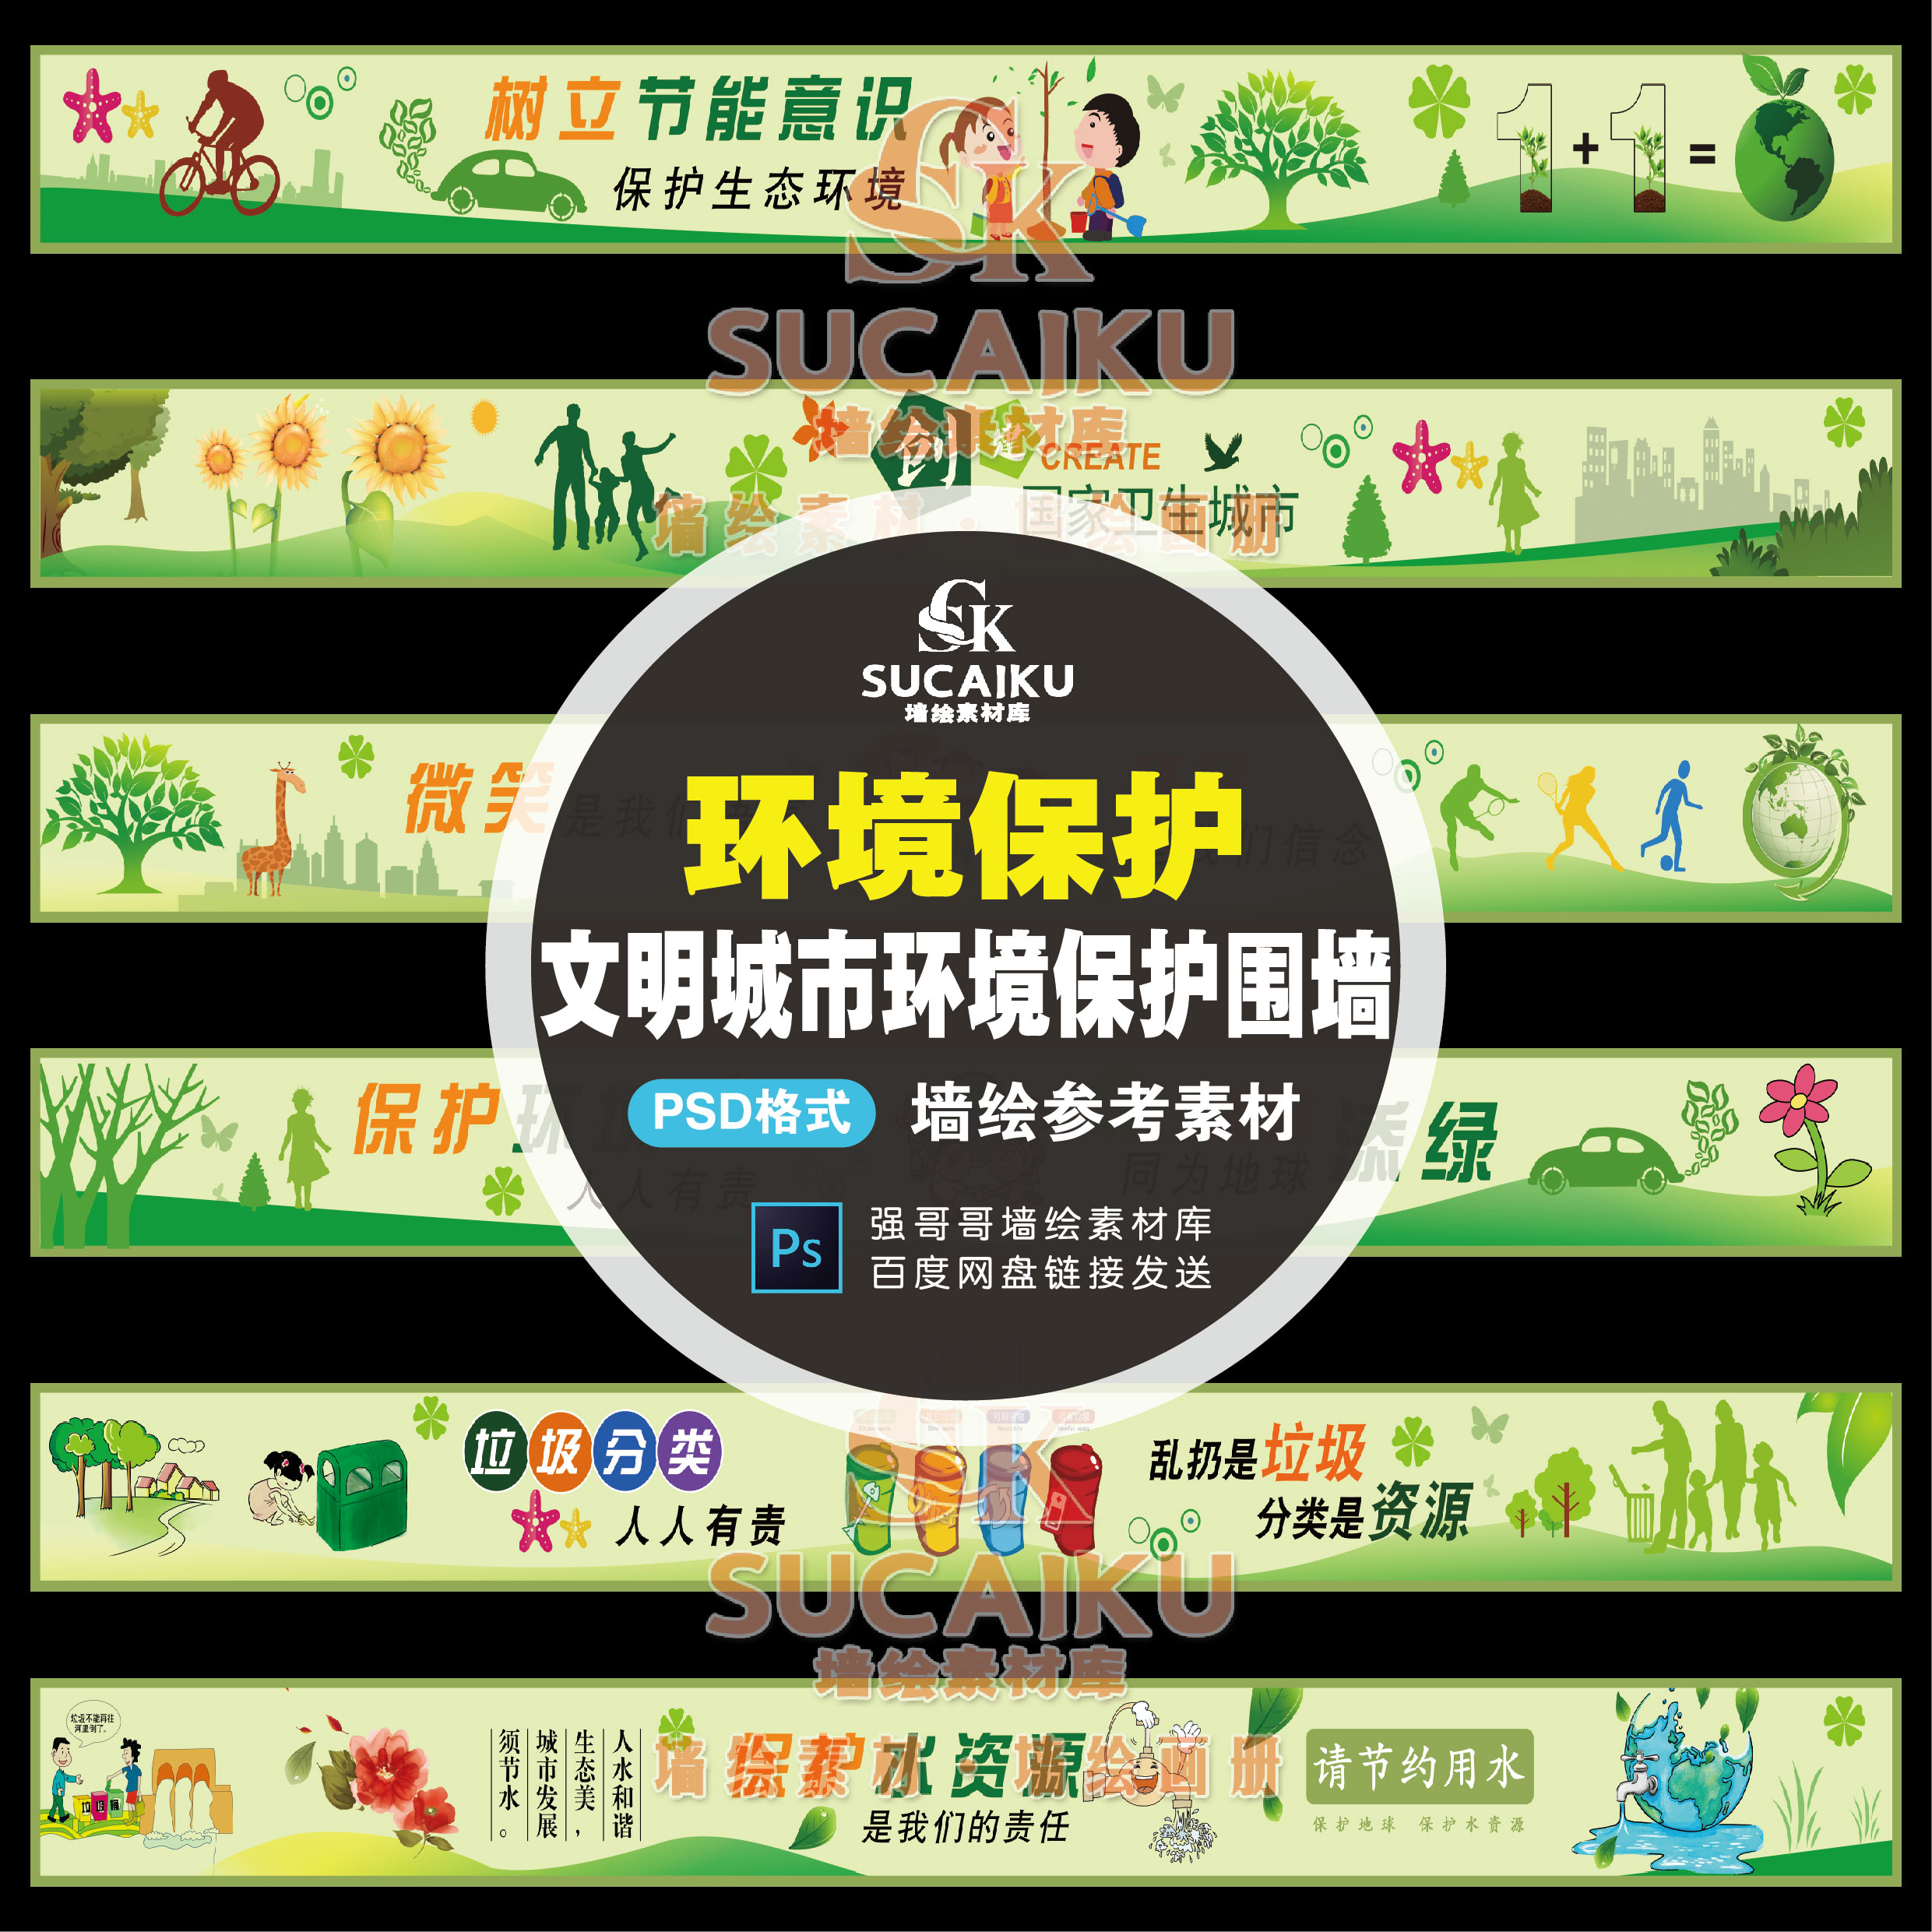 SCK24围墙环境保护文明城市宣传卡通标语手绘新农村建设墙绘素材